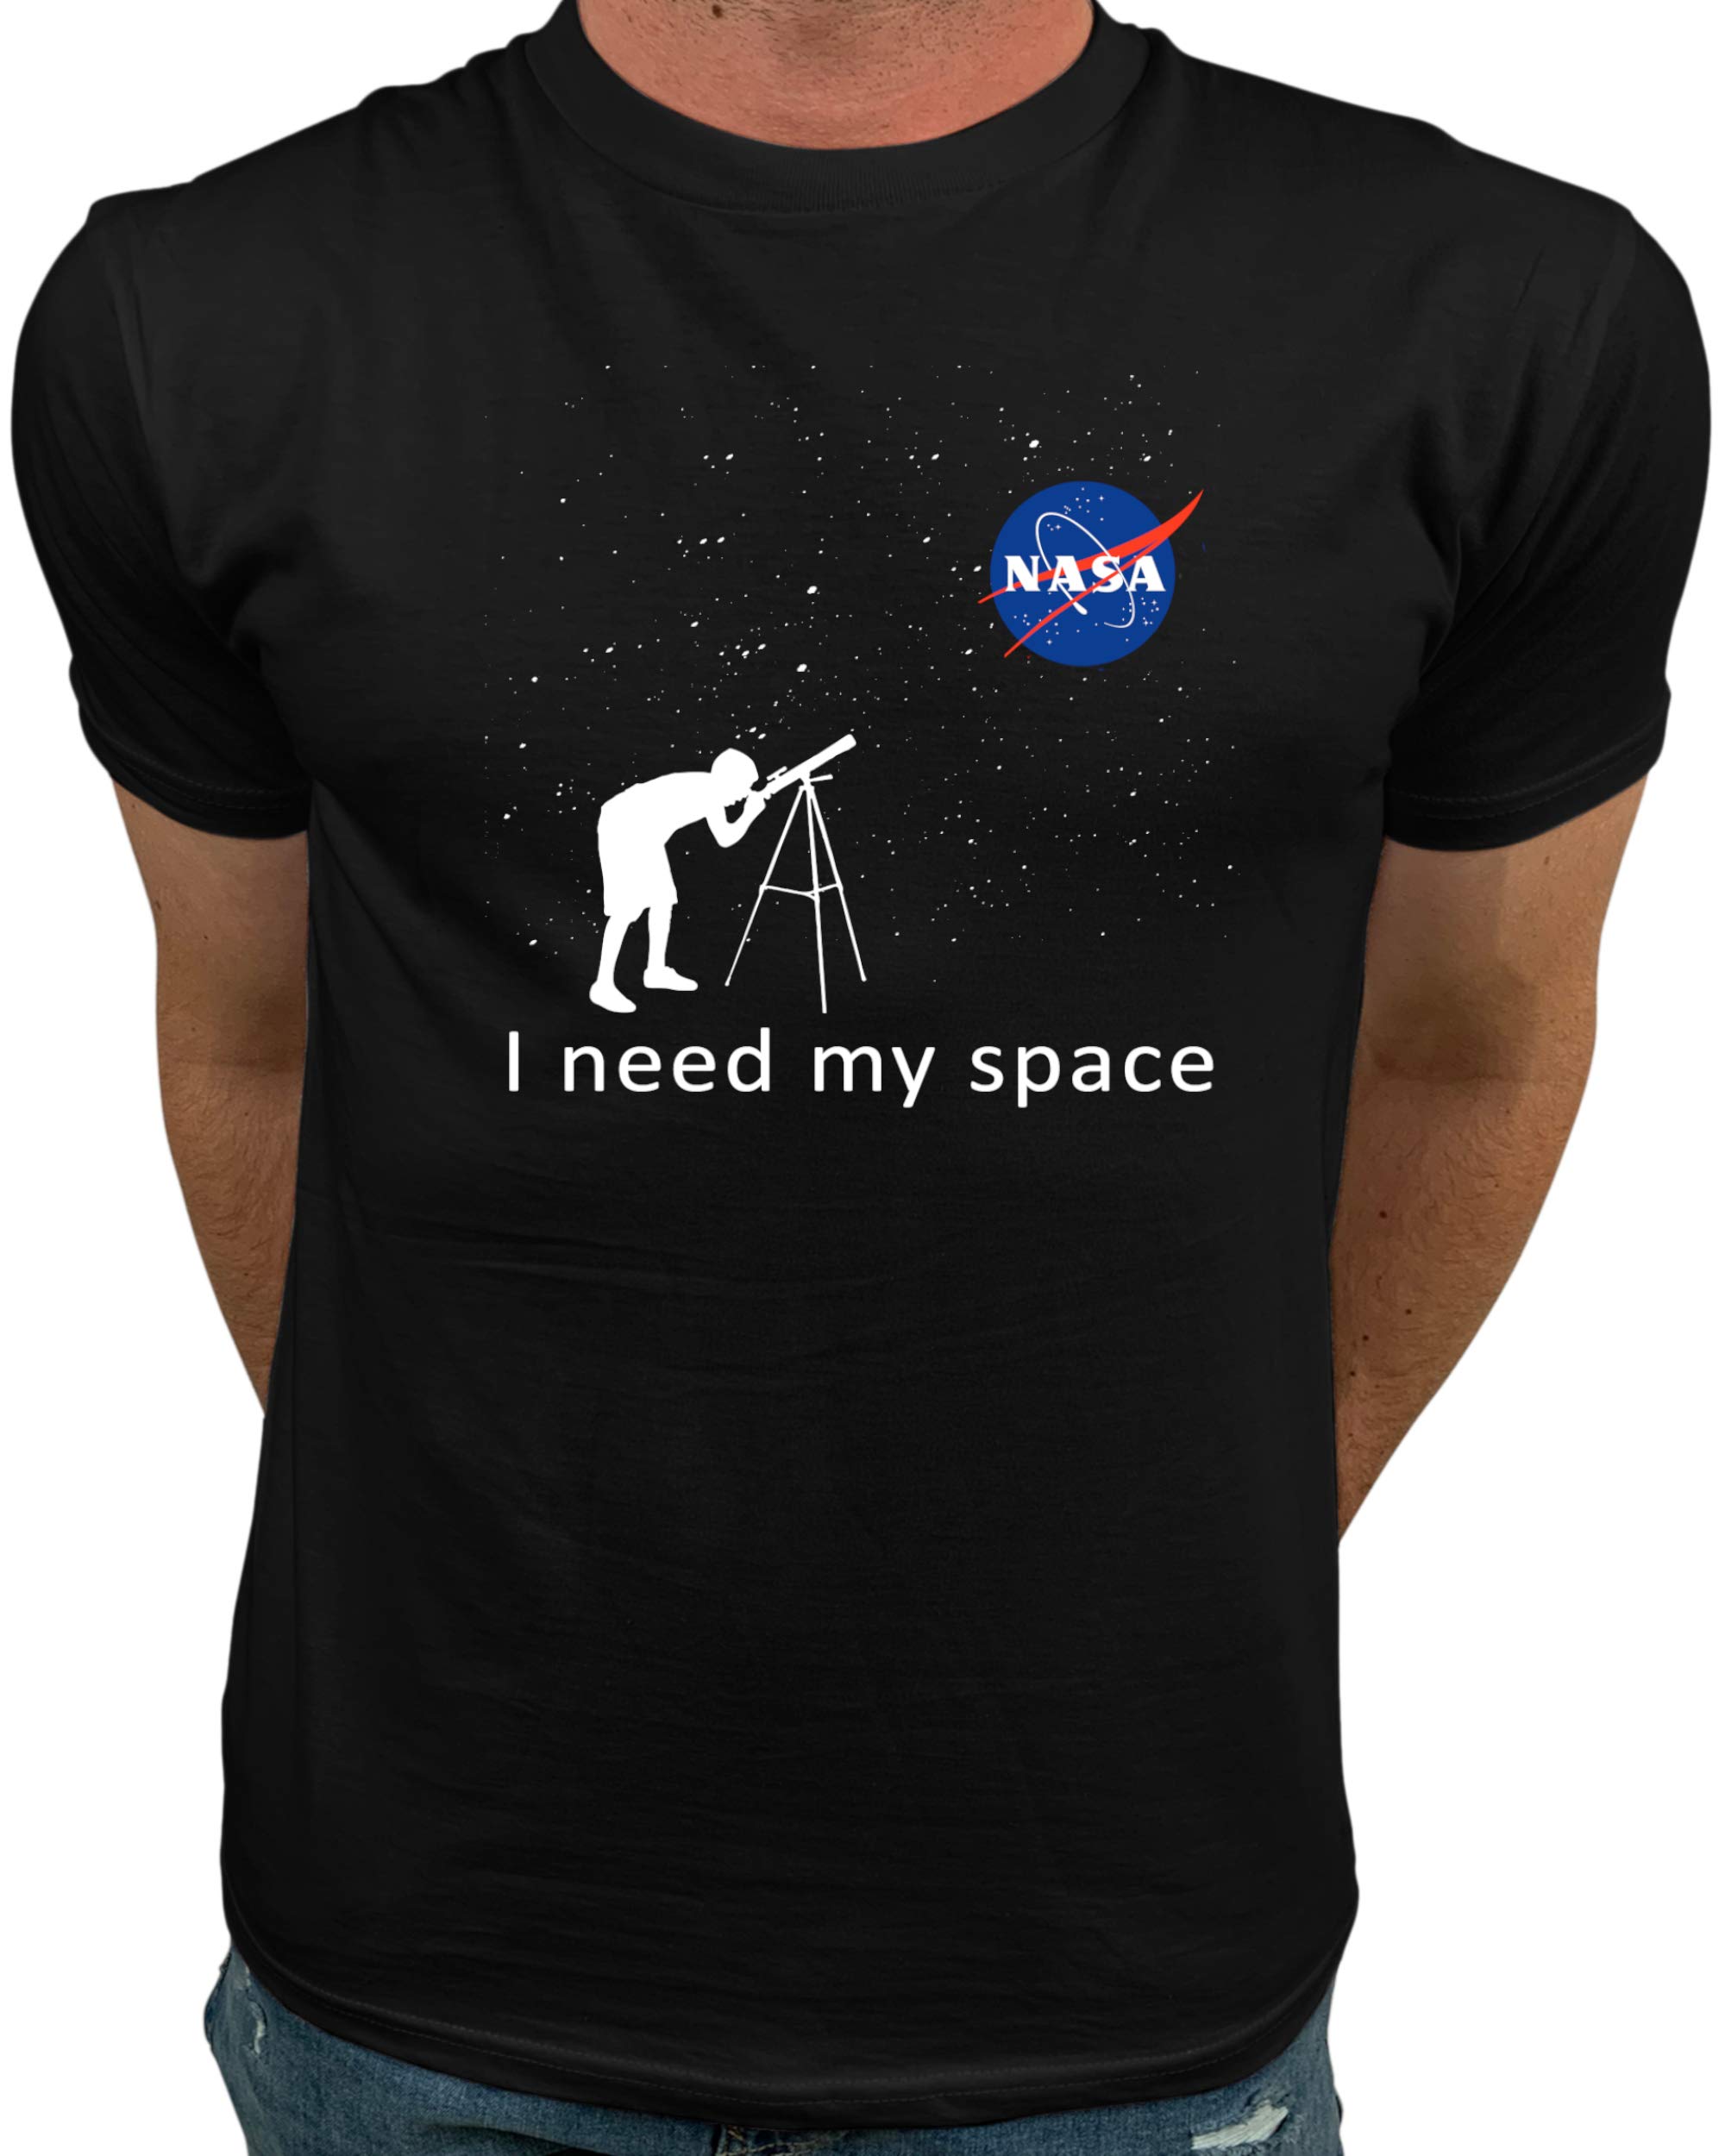 Market Trendz Official Logo NASA I Need My Space | NASA T Shirts Kids | NASA Clothing Men